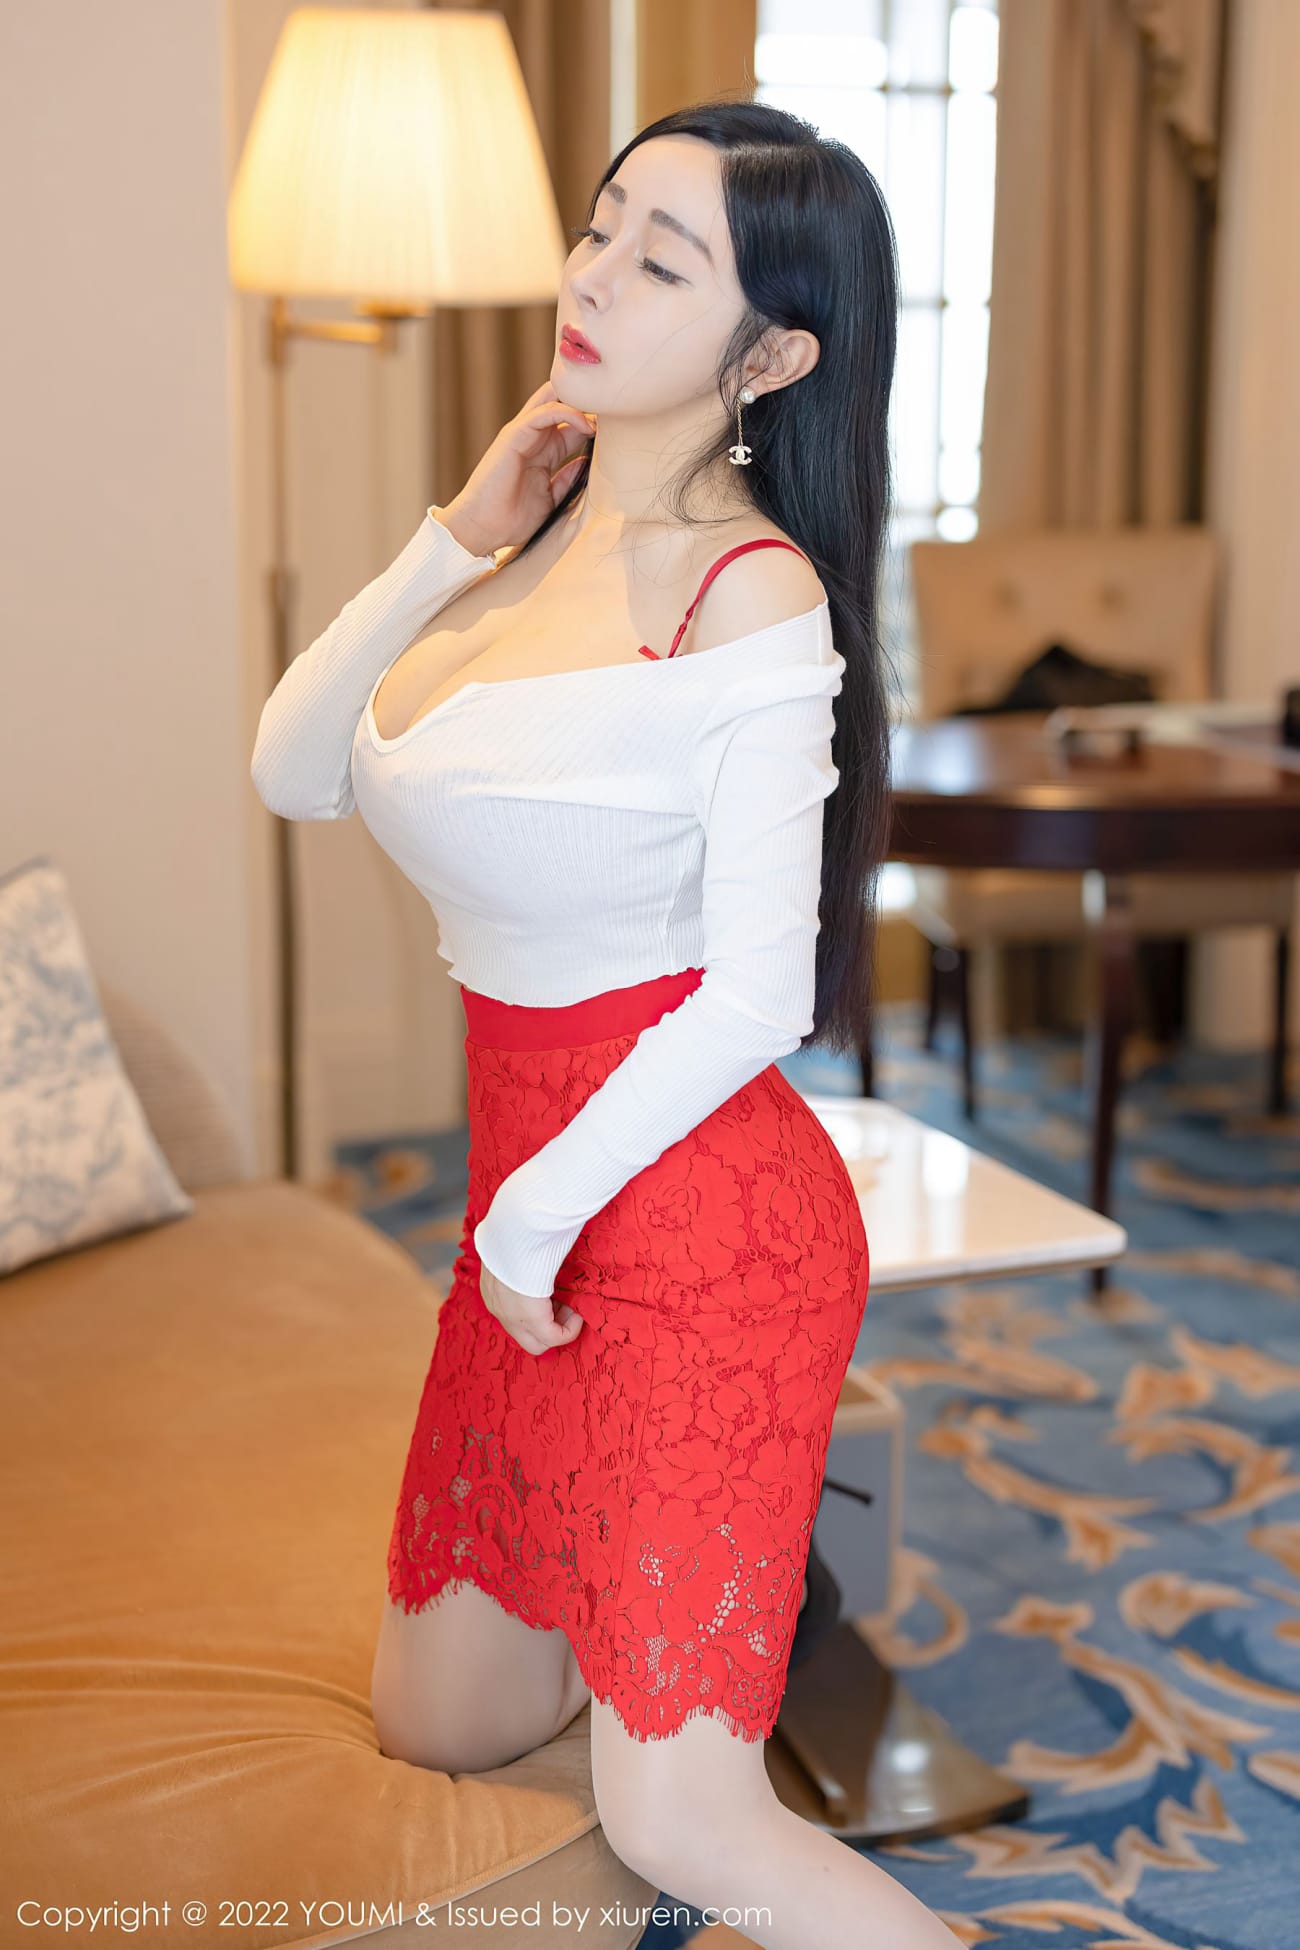 美女模特允薾红色包臀裙原色丝袜酒店场景性感写真